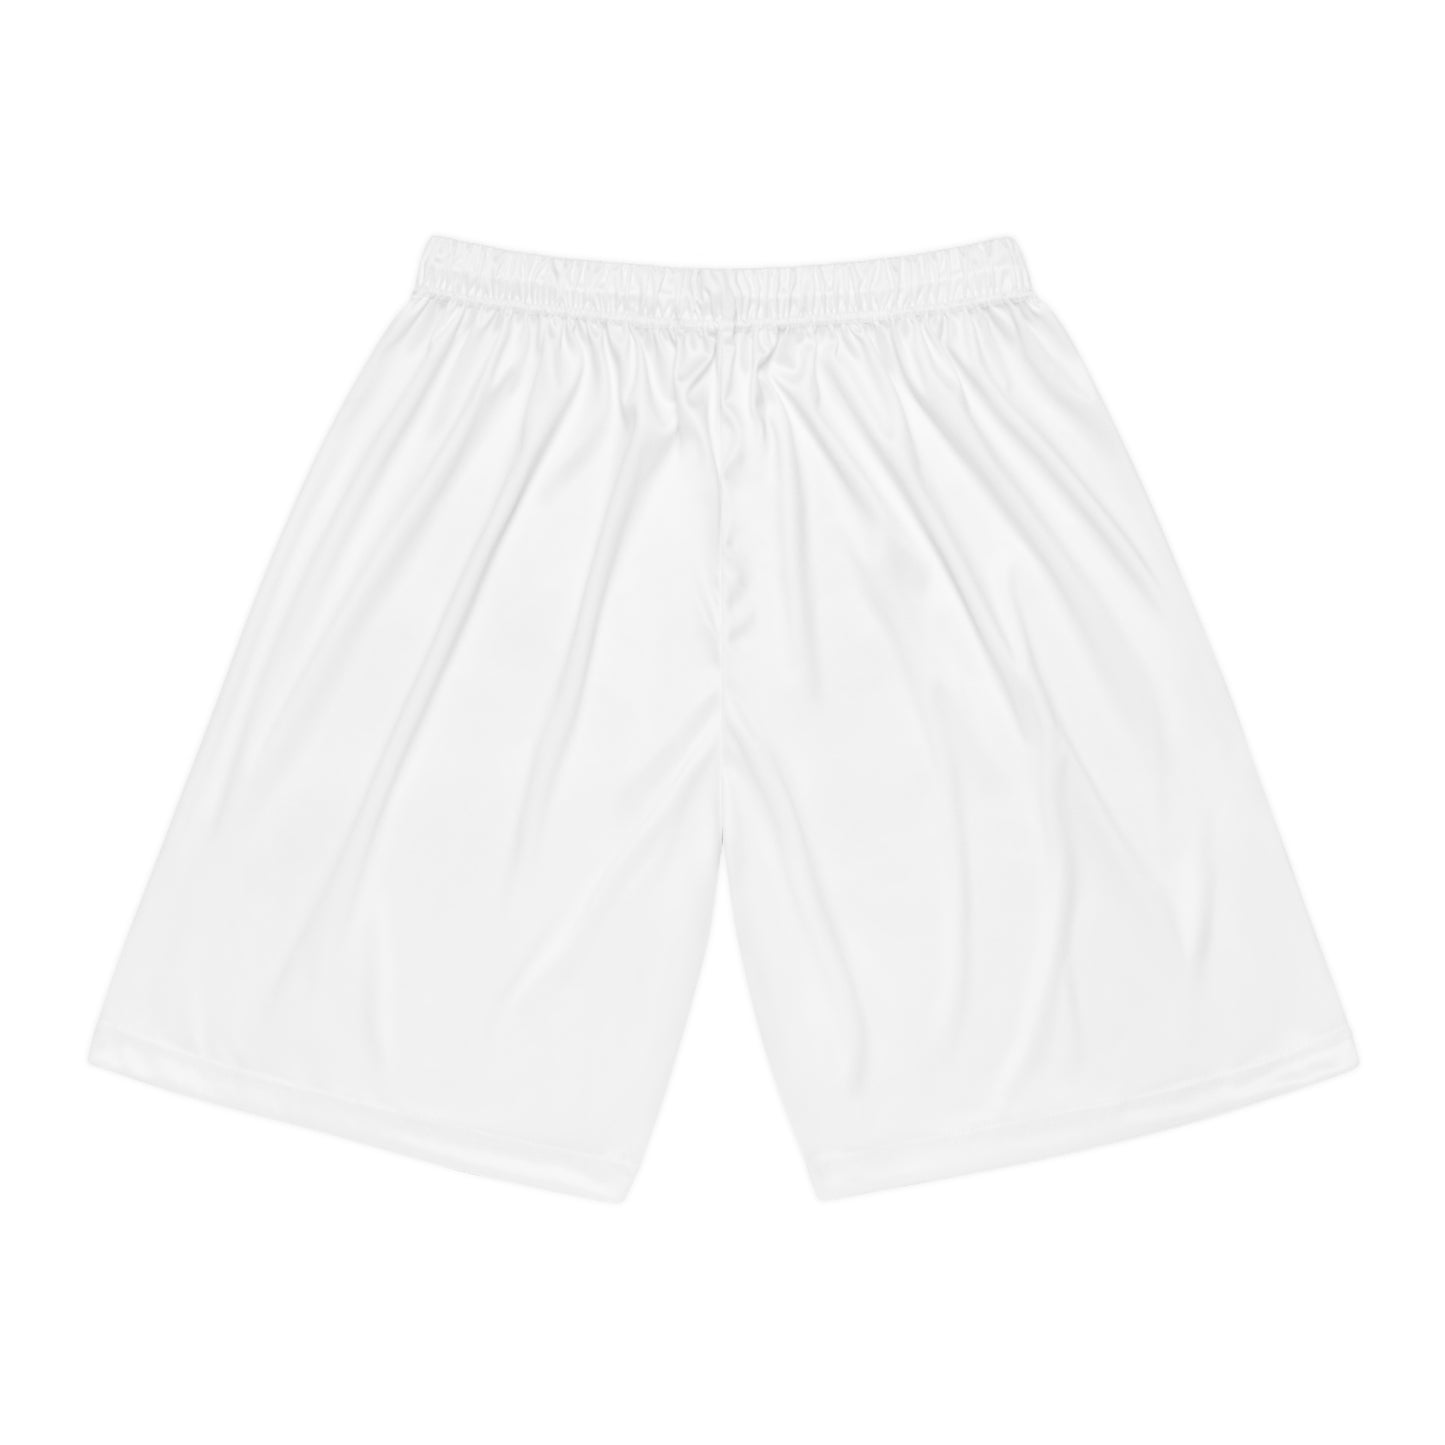 Self Love Shorts (White)